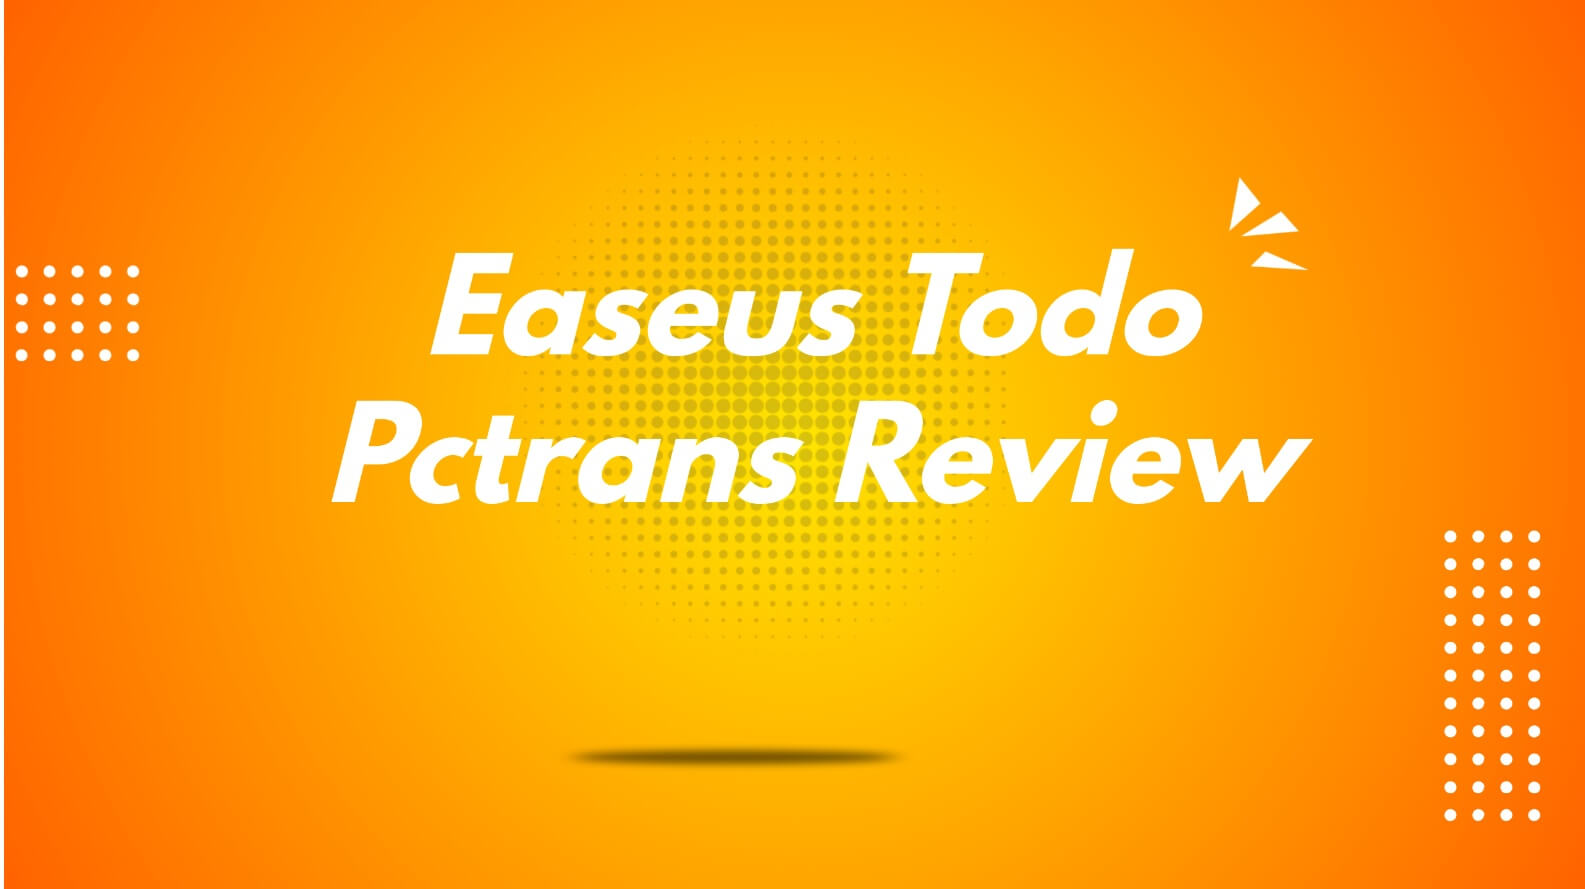 easeus-todo-pctrans-review